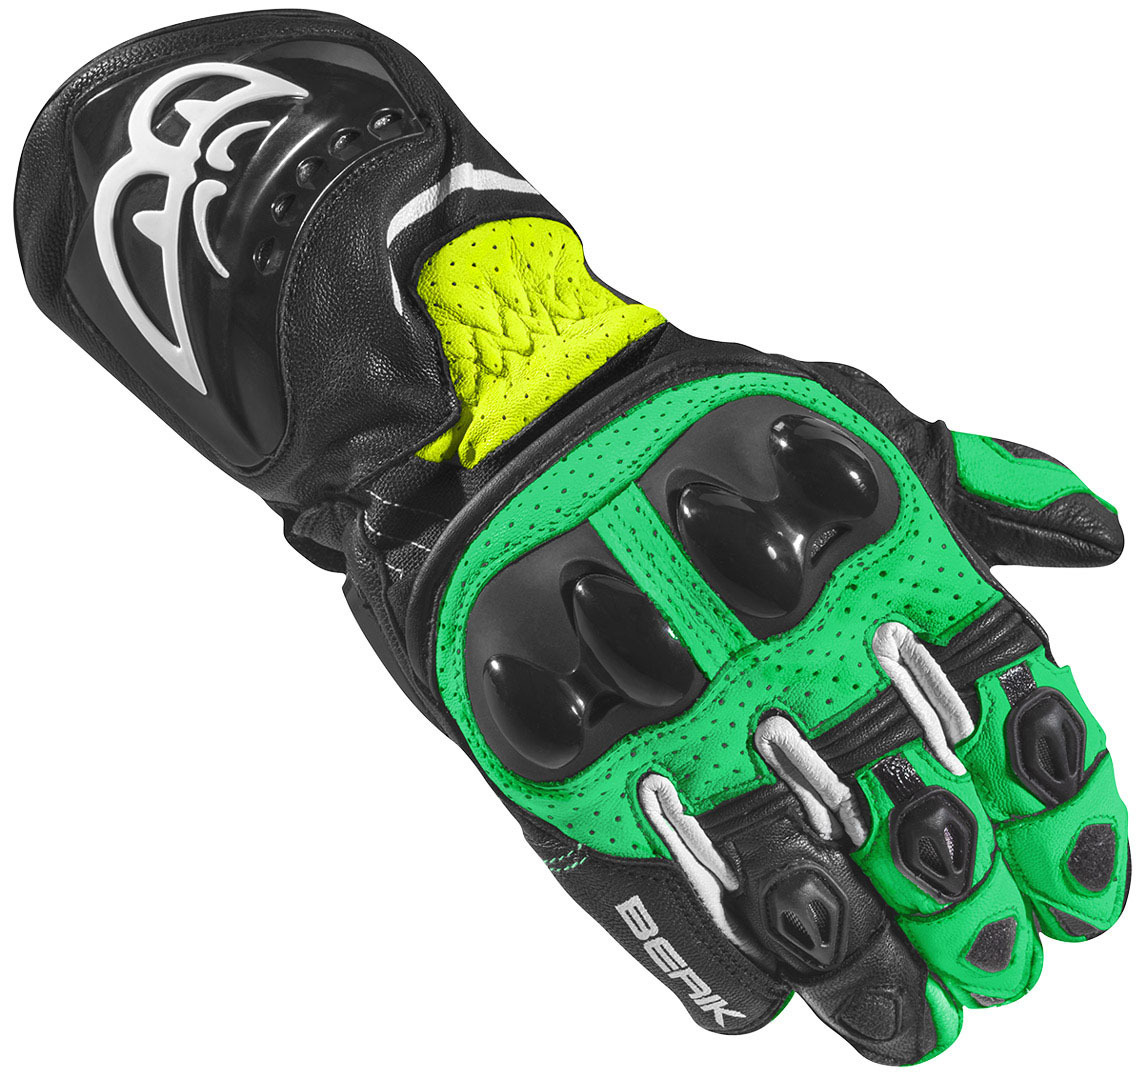 Мотоциклетные перчатки Berik Spa Evo с длинными манжетами, черный/зеленый мотоциклетные перчатки spa evo berik черный